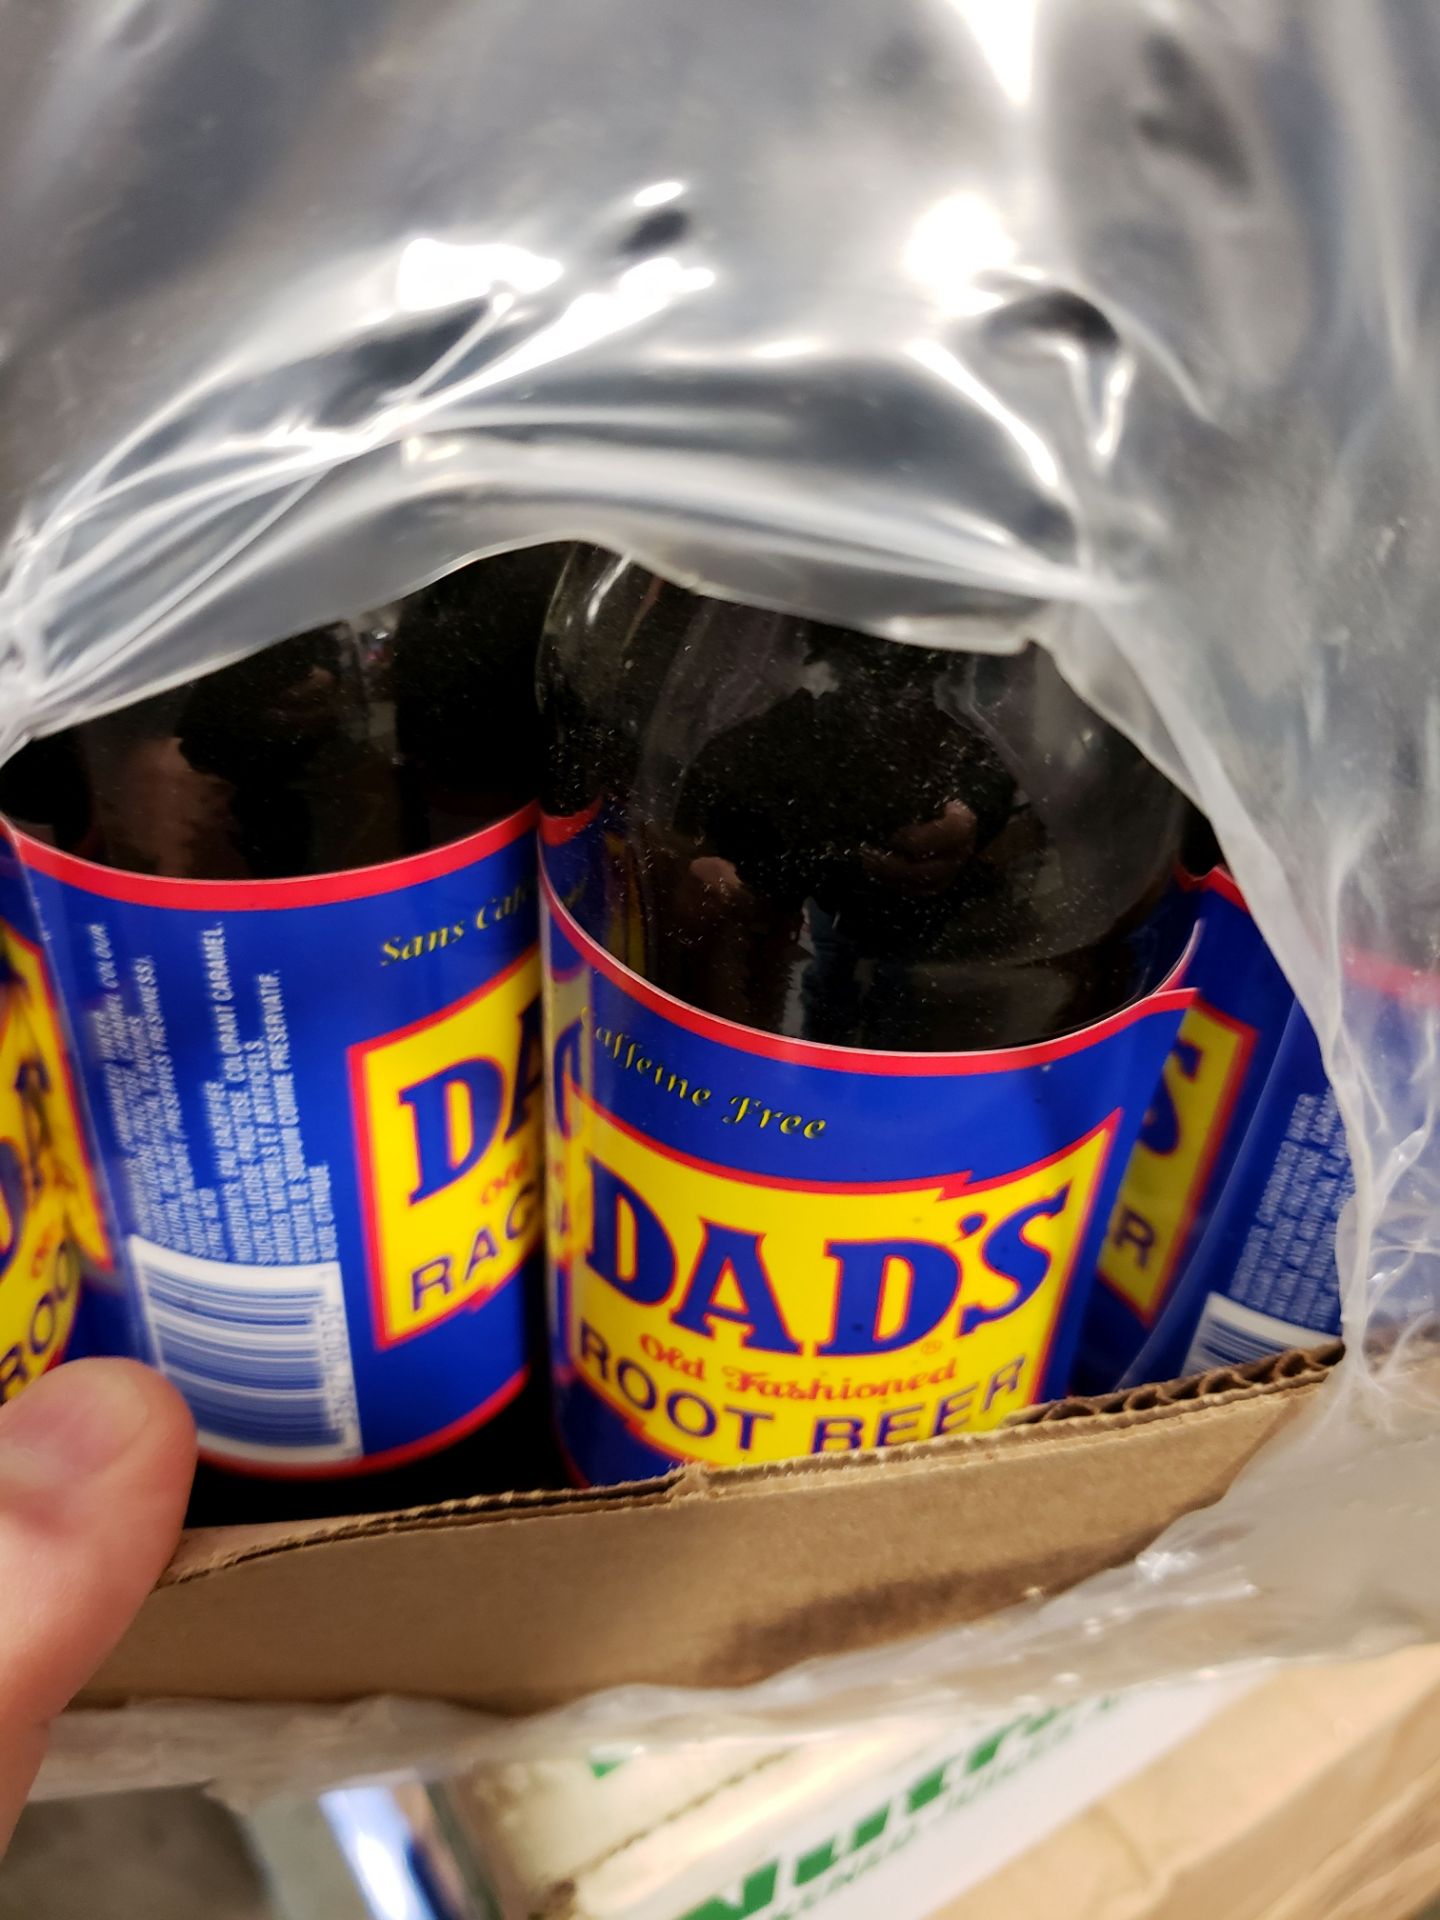 Dad's Root Beer - 23 x 355ml Bottles - Image 2 of 2